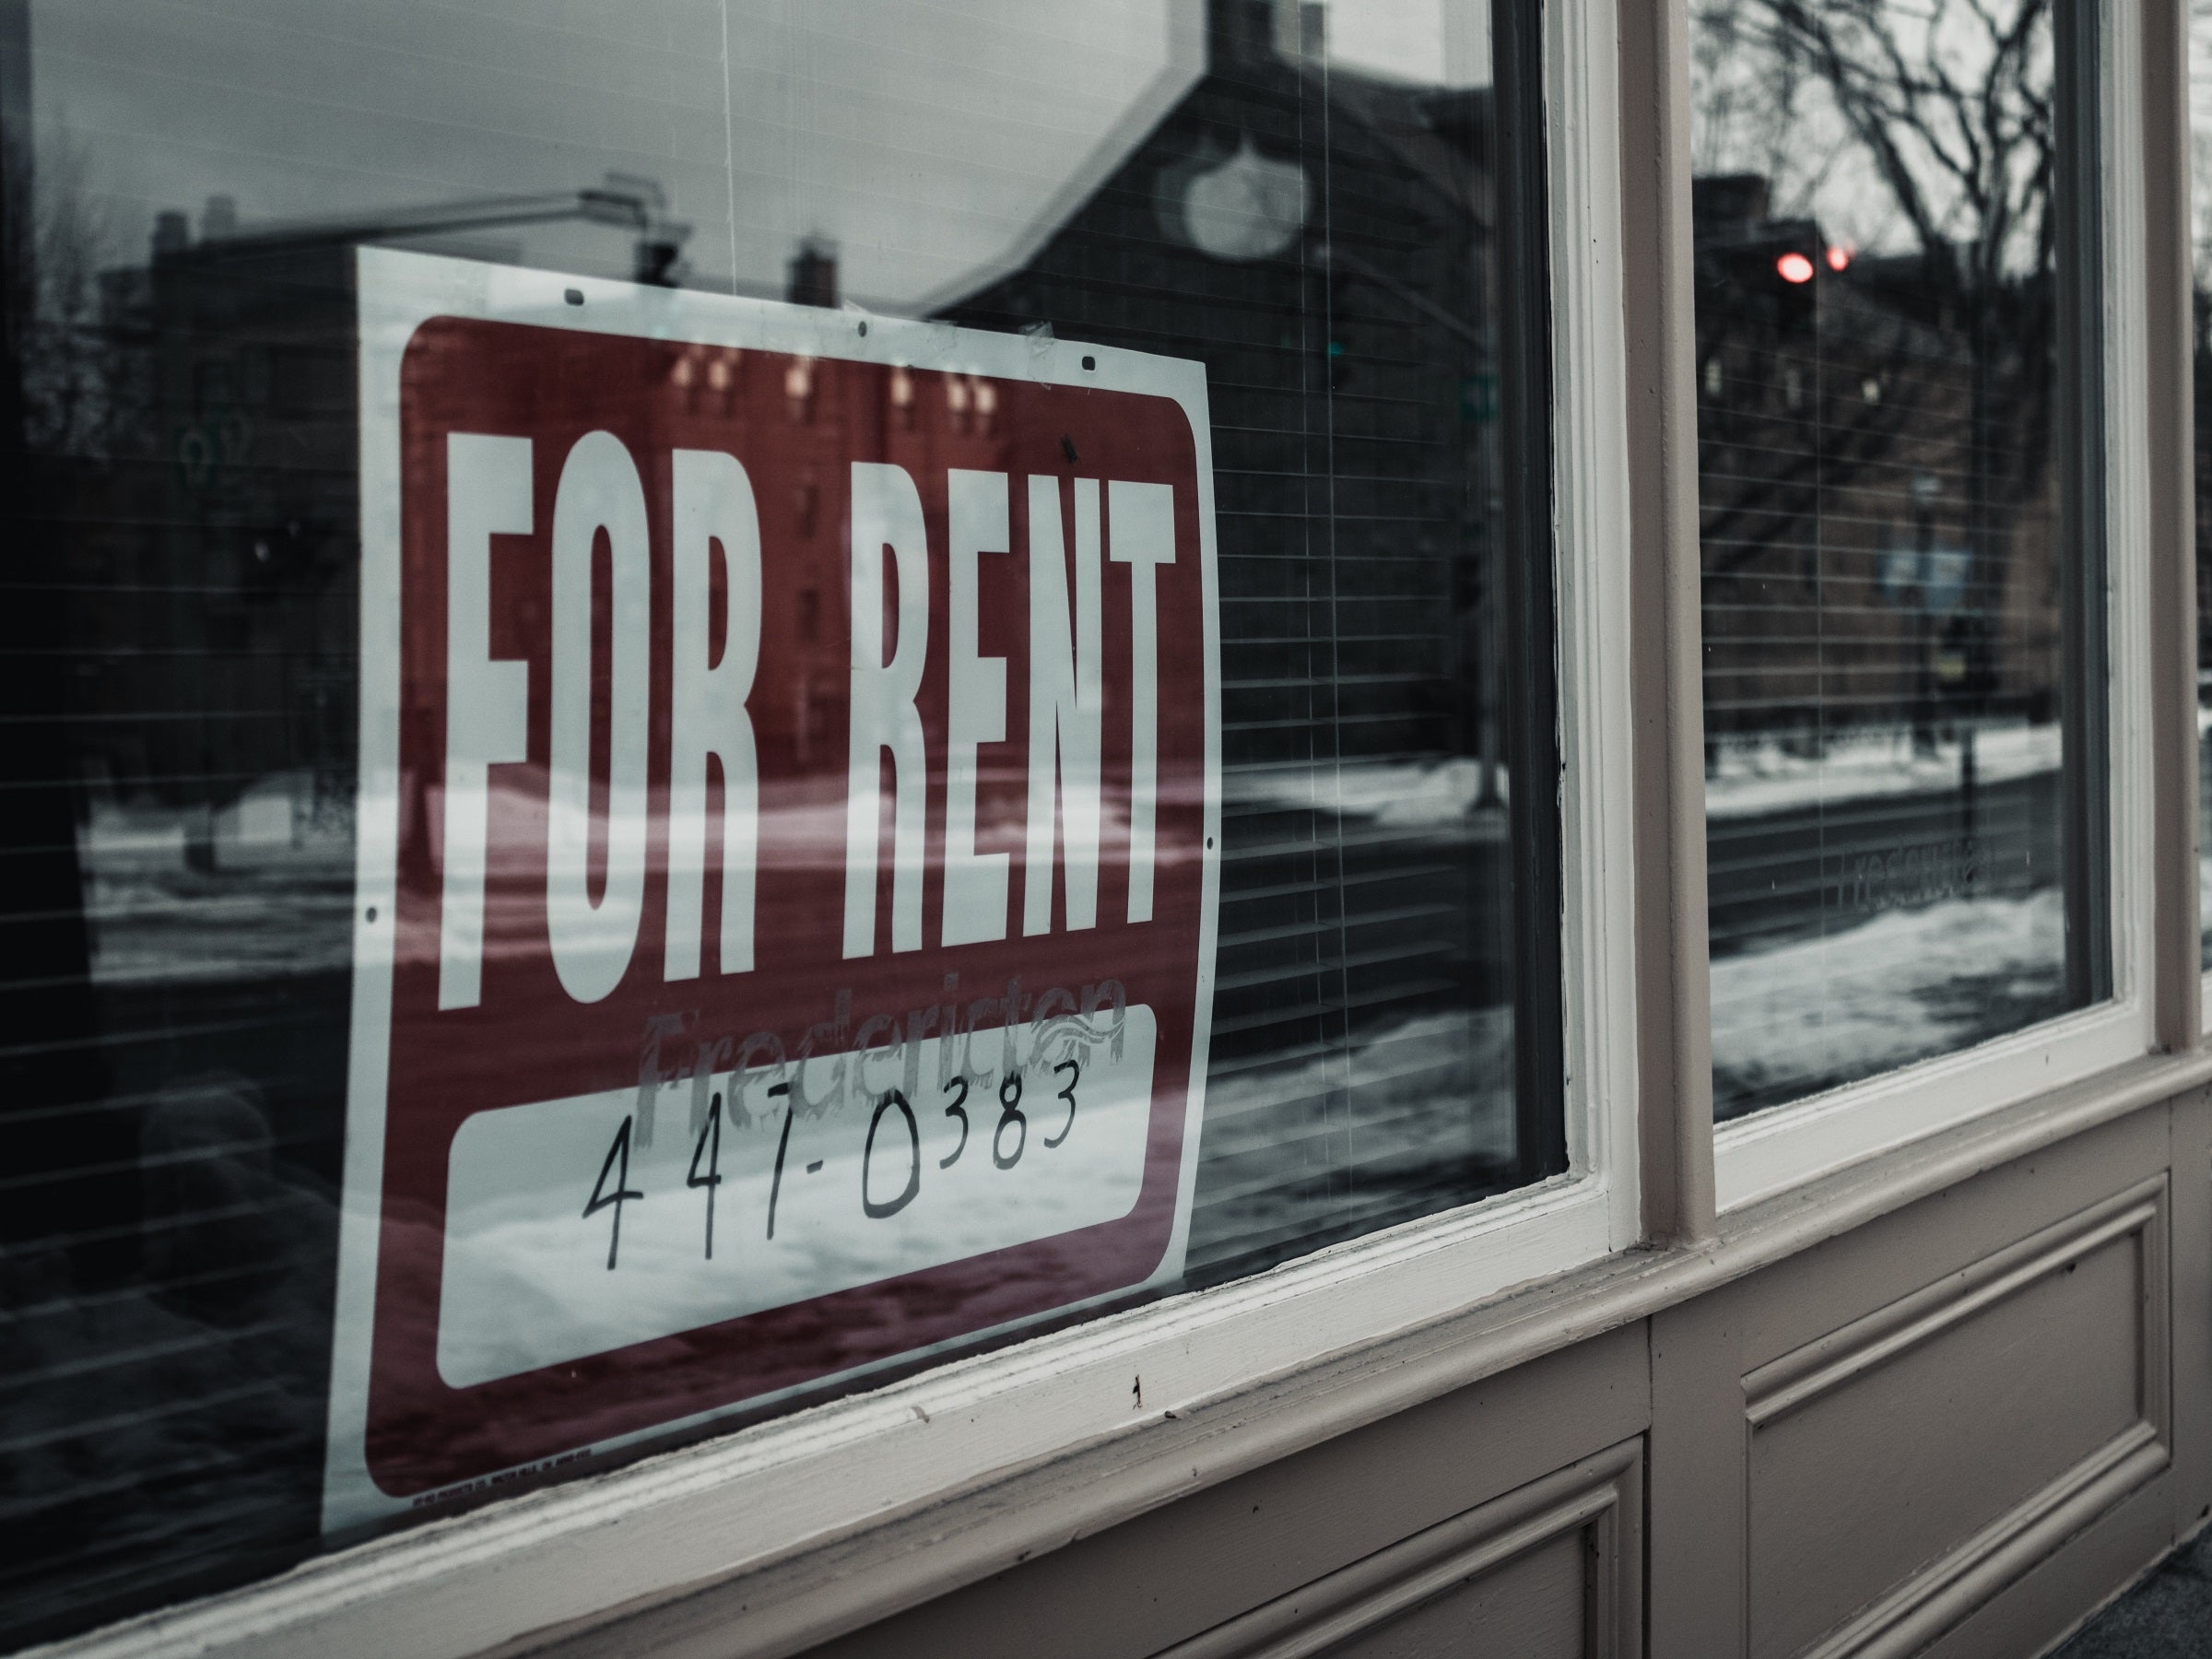 #Wohnungsmarkt-Krise birgt riesige Gefahr für Verbraucher – doch niemanden interessiert’s